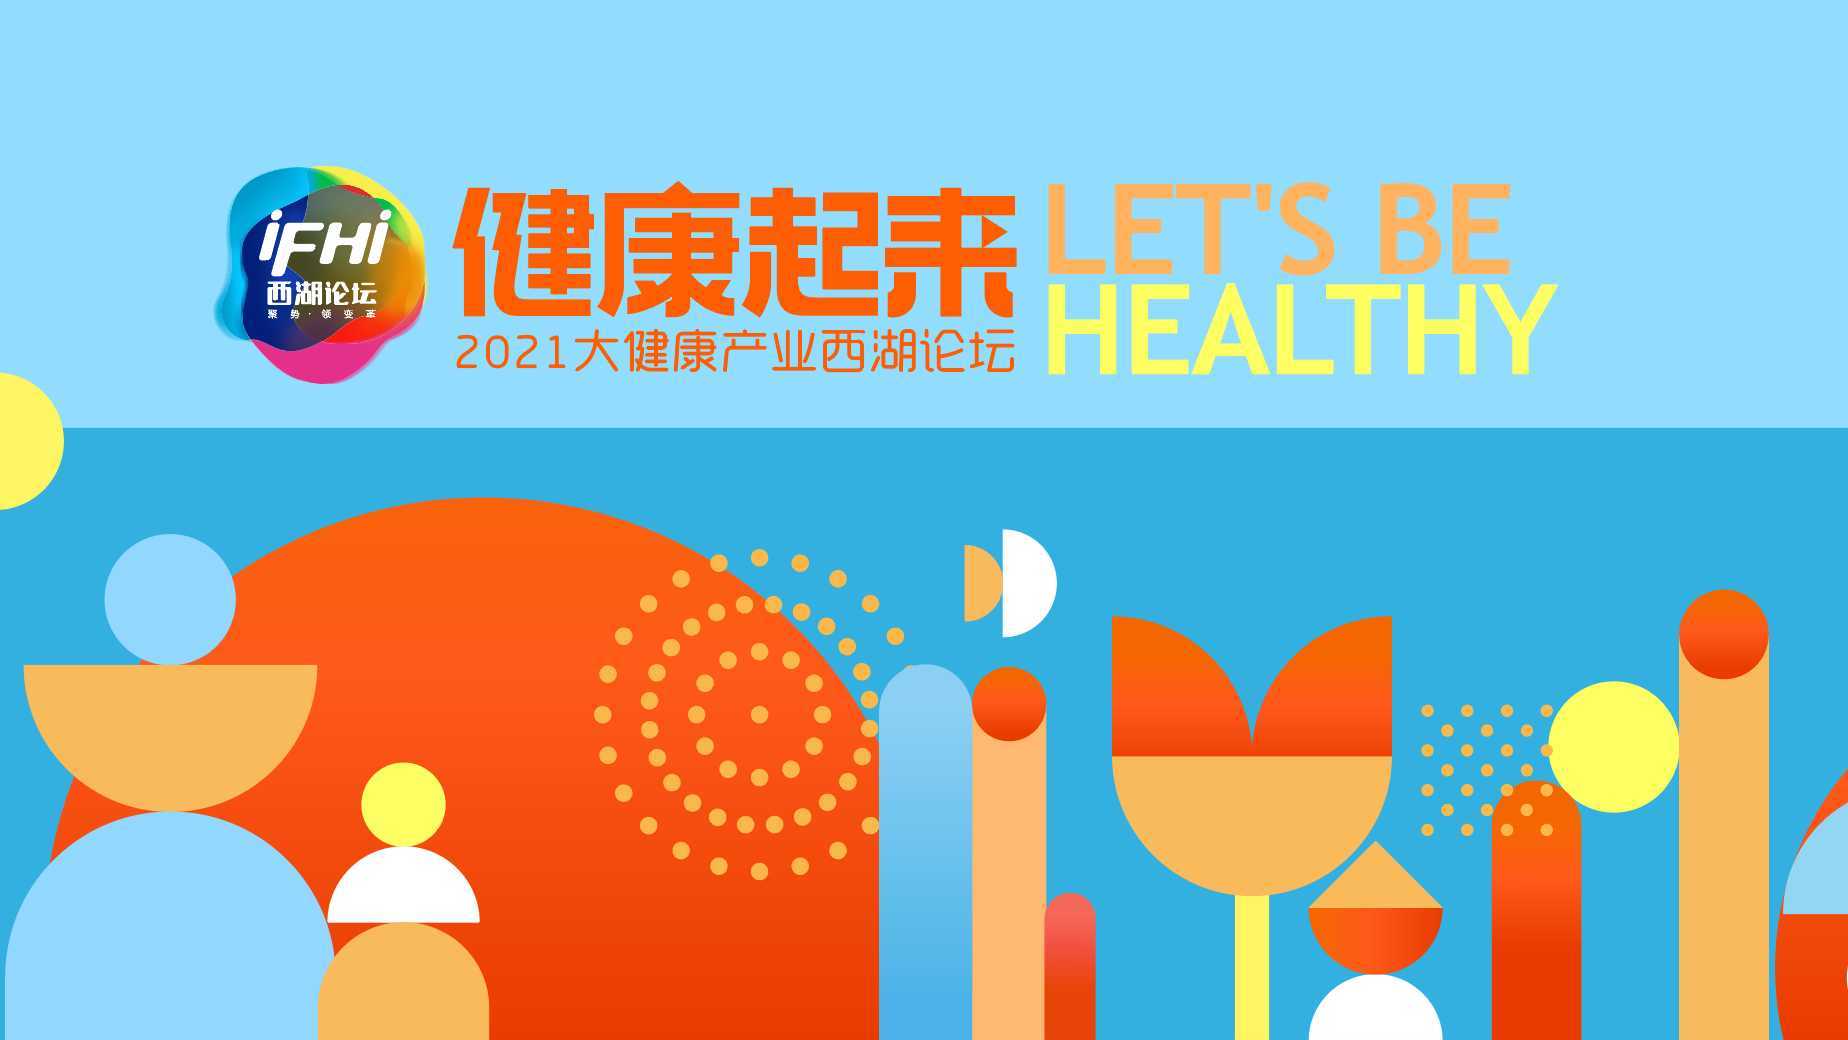 【红马出品】2021大健康产业西湖论坛 大会开场片《健康起来》